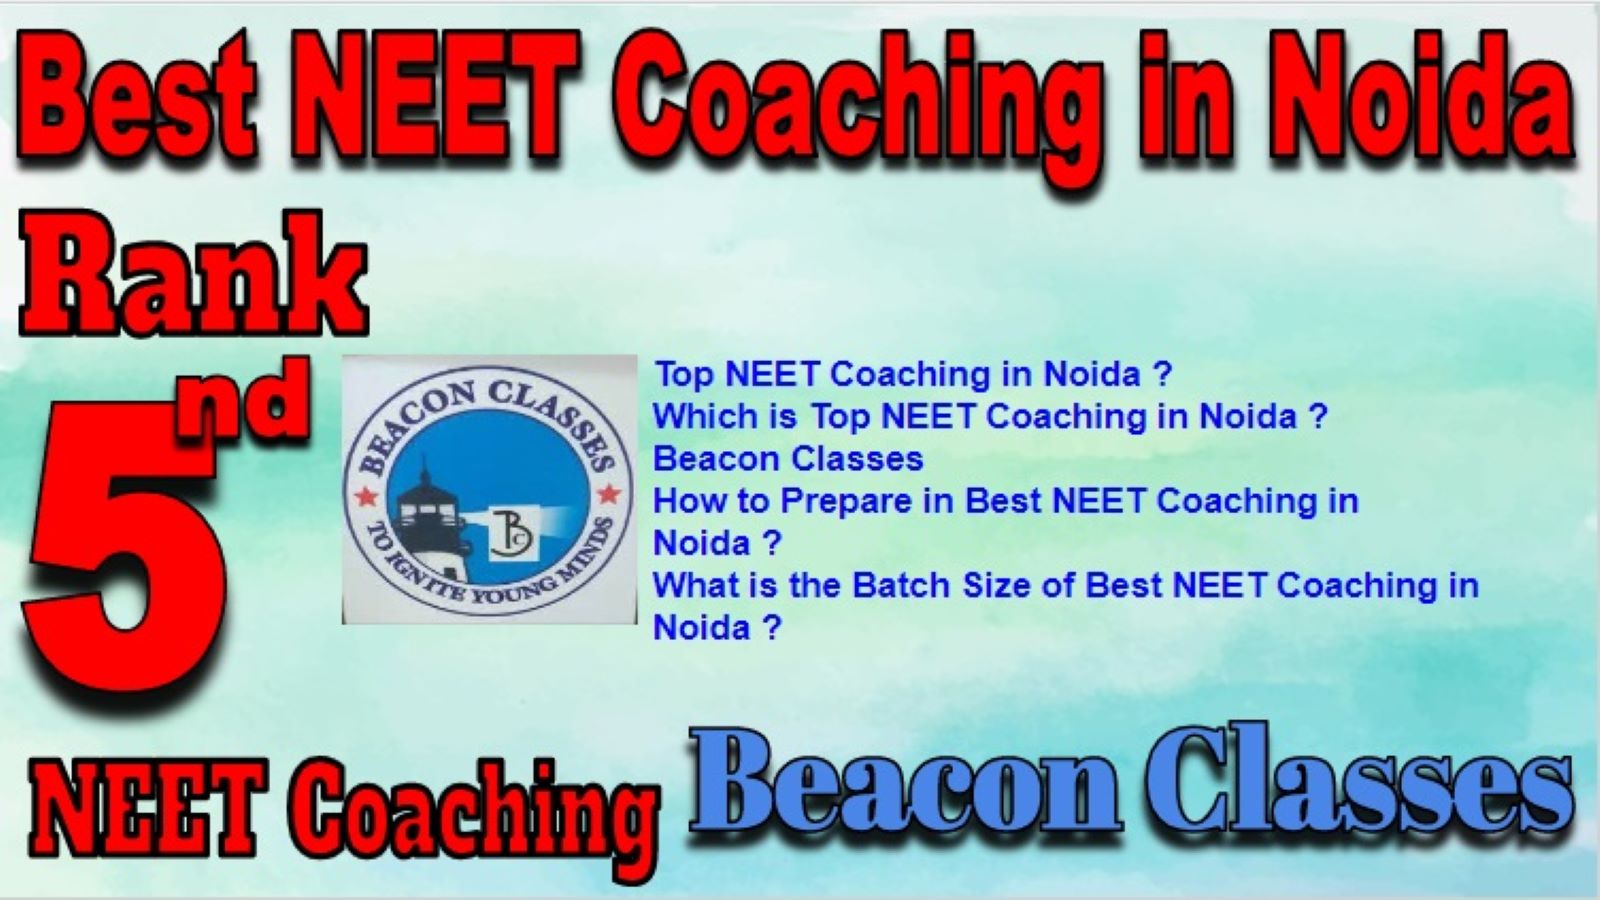 Best NEET Coaching Institutes In Noida